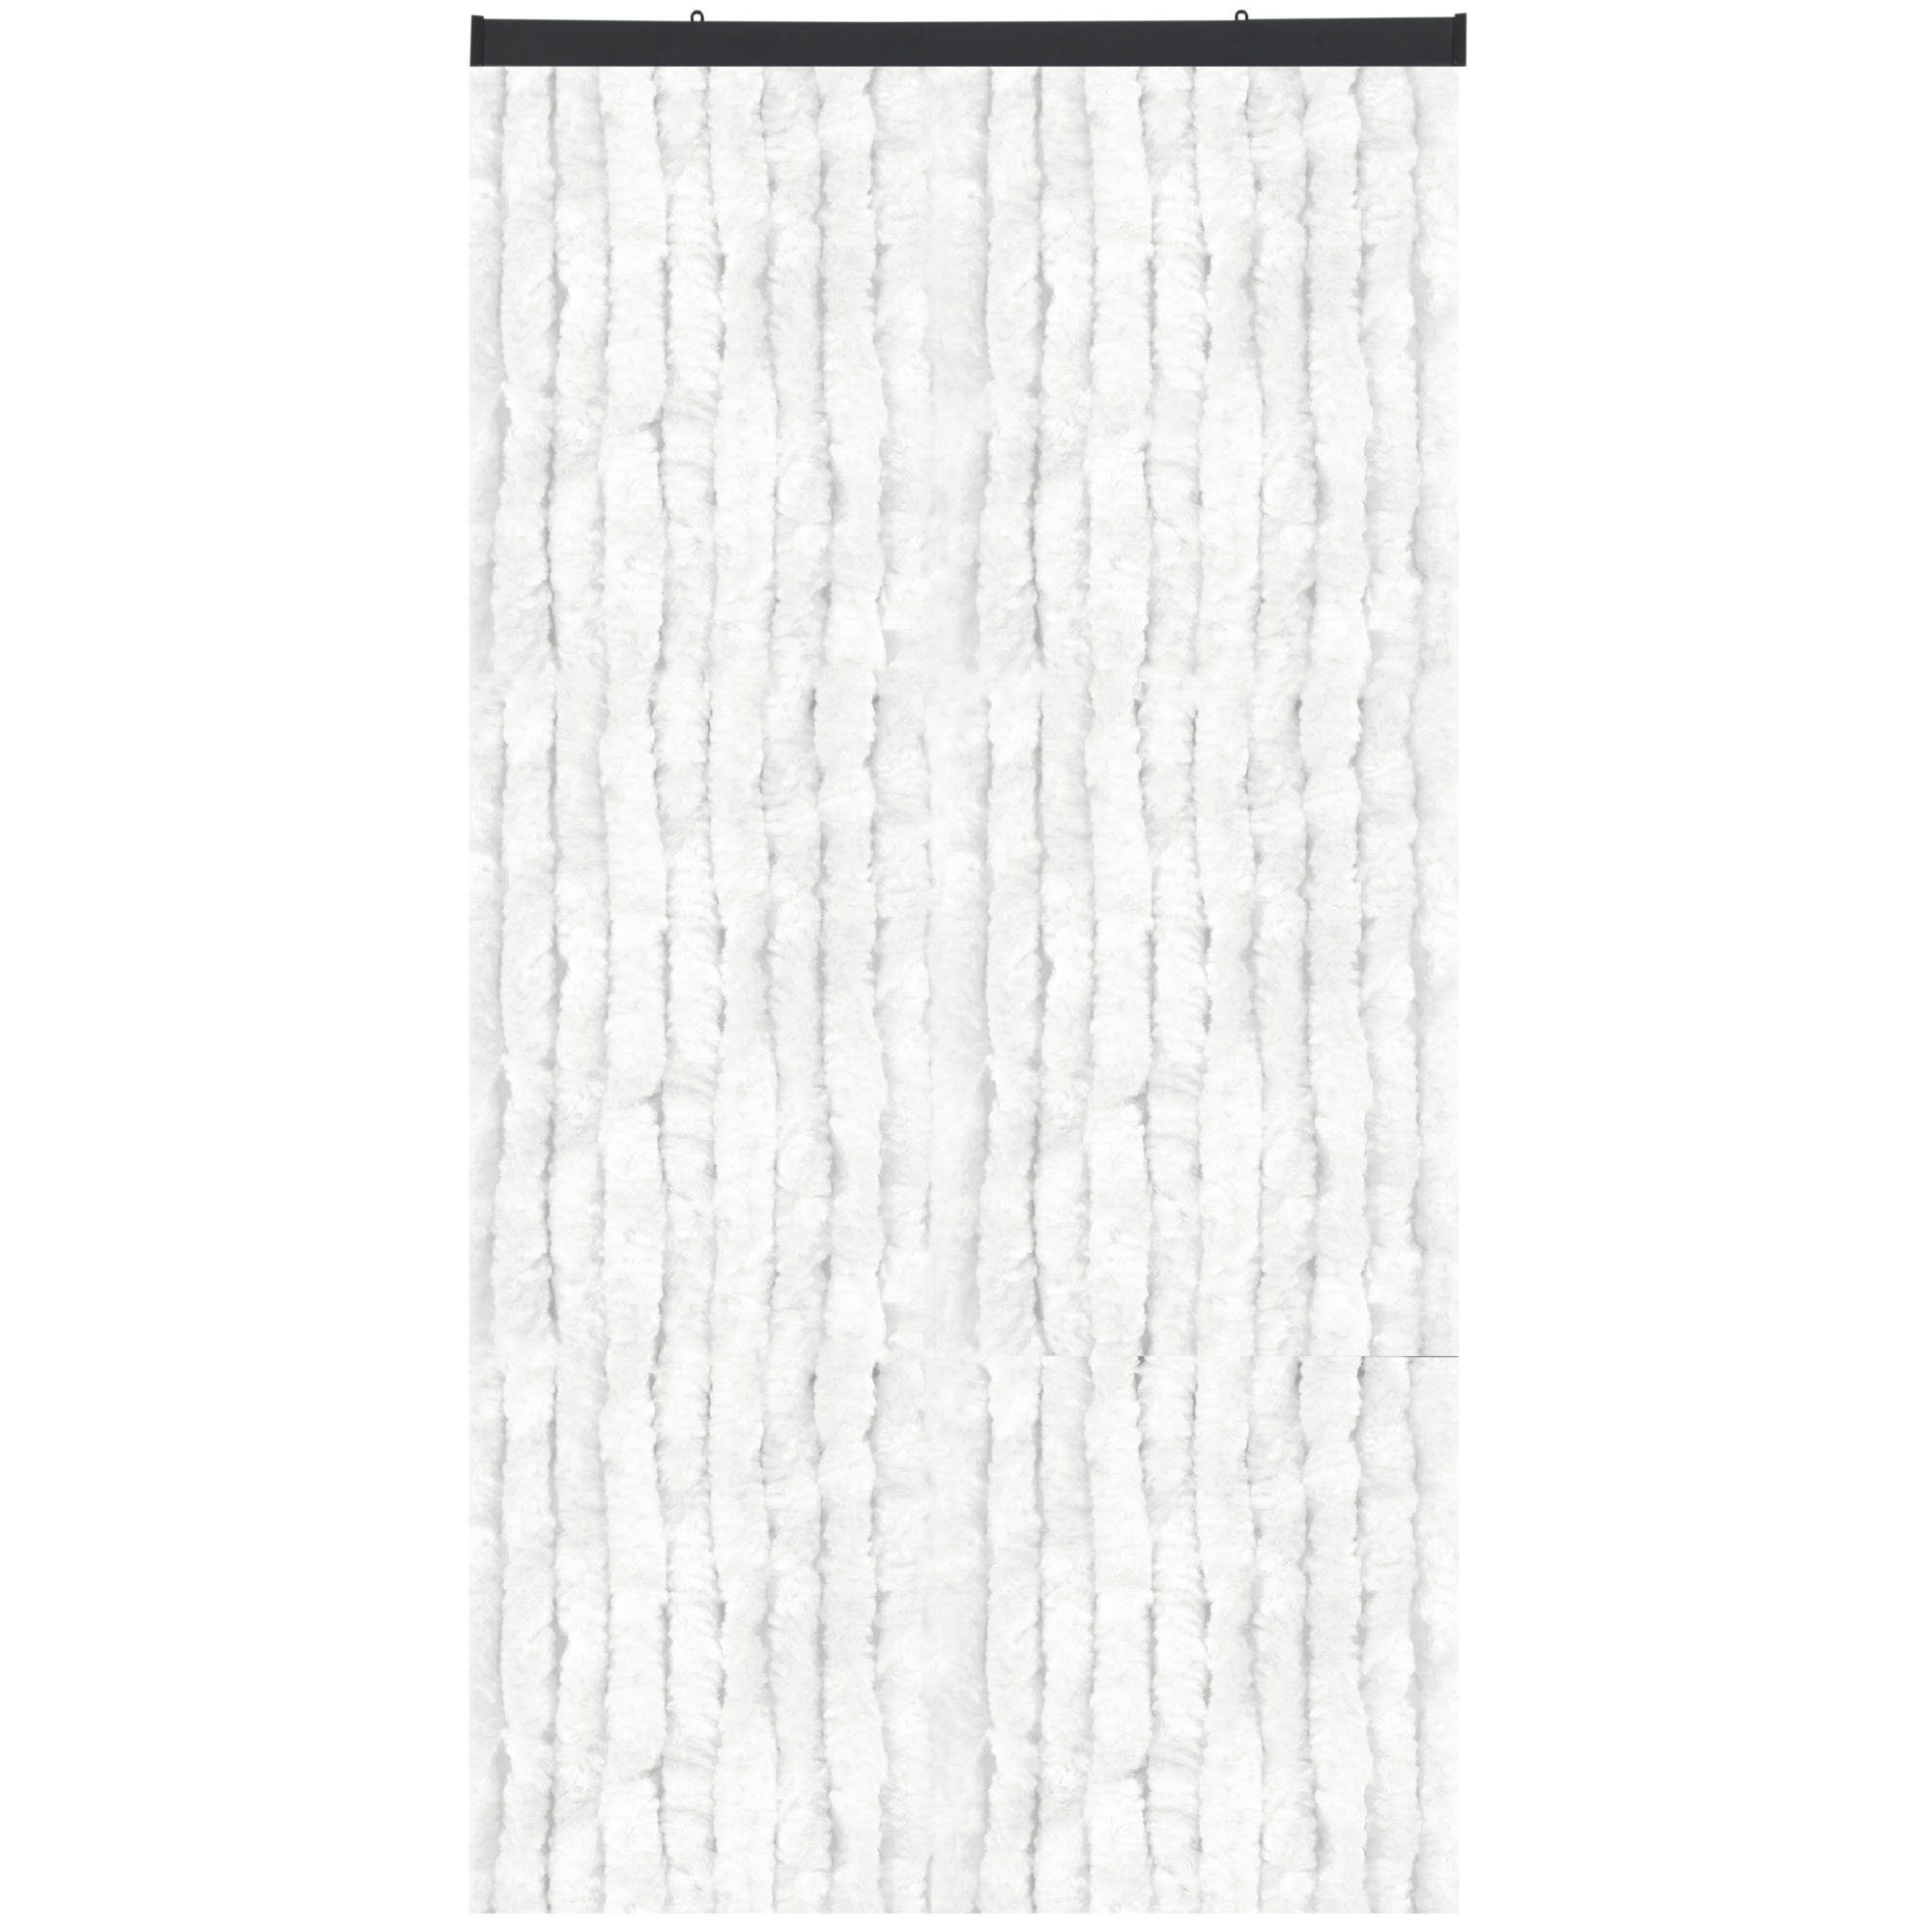 Türvorhang Flauschi, Arsvita, Ösen (1 St), Flauschvorhang 160x185 cm in Unistreifen weiß, viele Farben